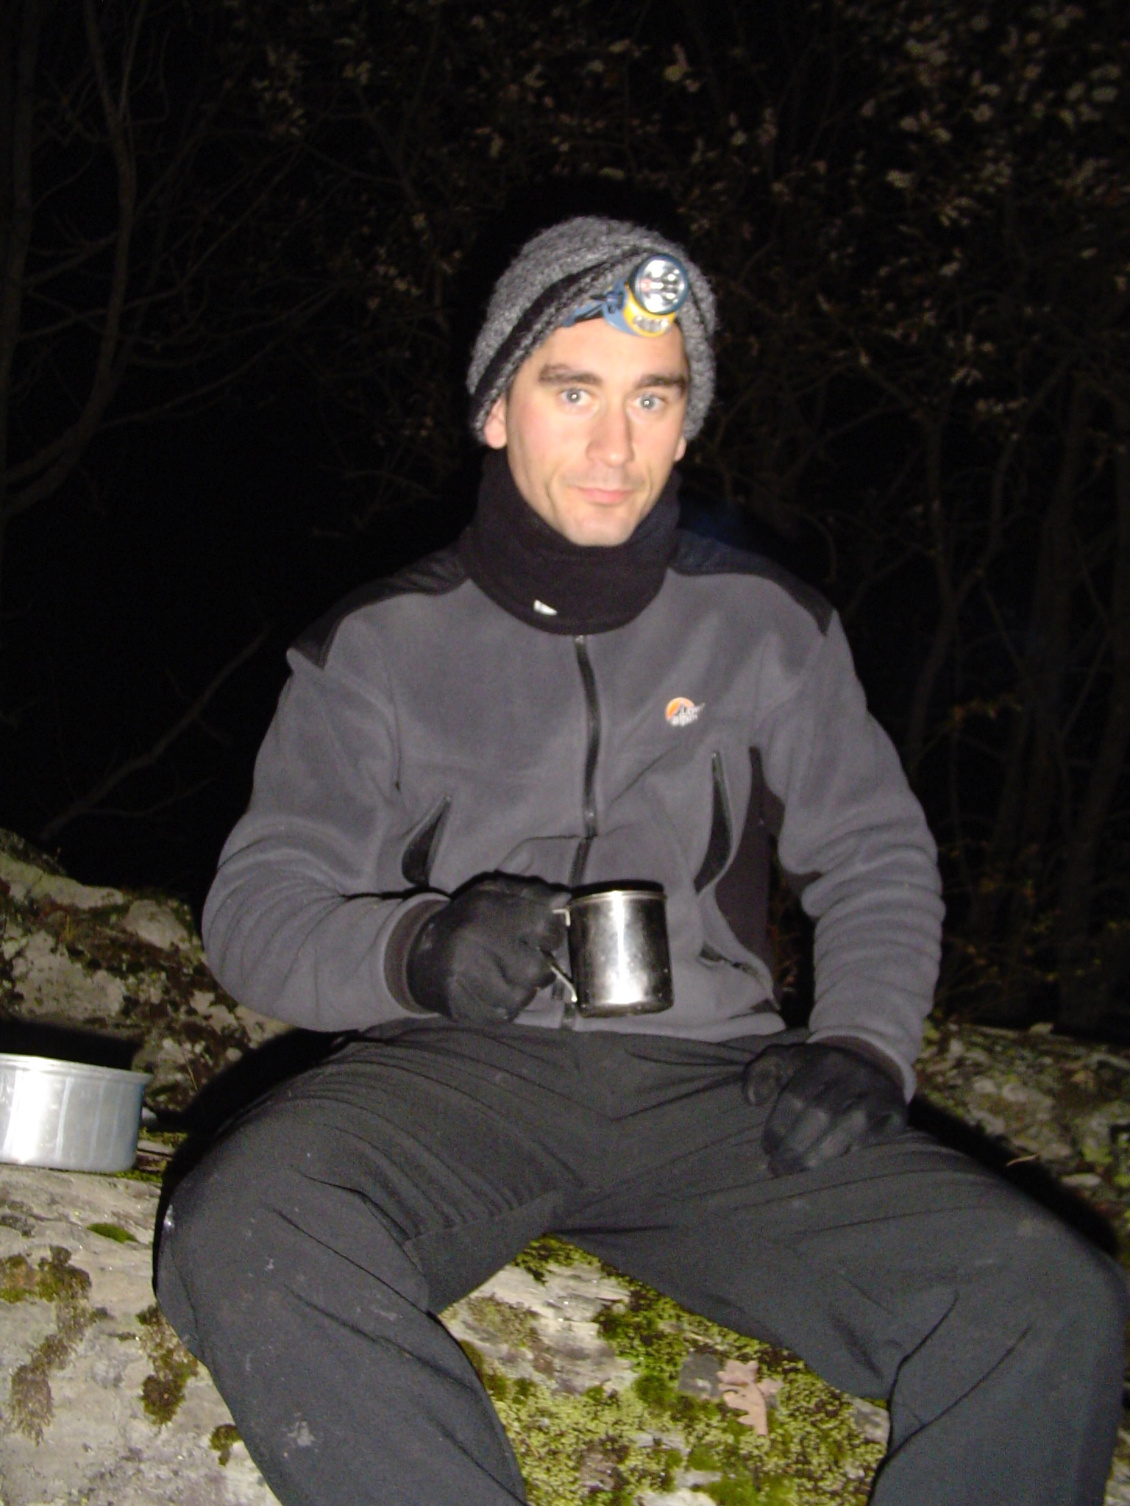 2003 : bivouac hivernal dans les Pyrénées.
Le bonheur des anciennes frontales lourdes et encombrantes avec le gros bloc de piles derrière la tête.